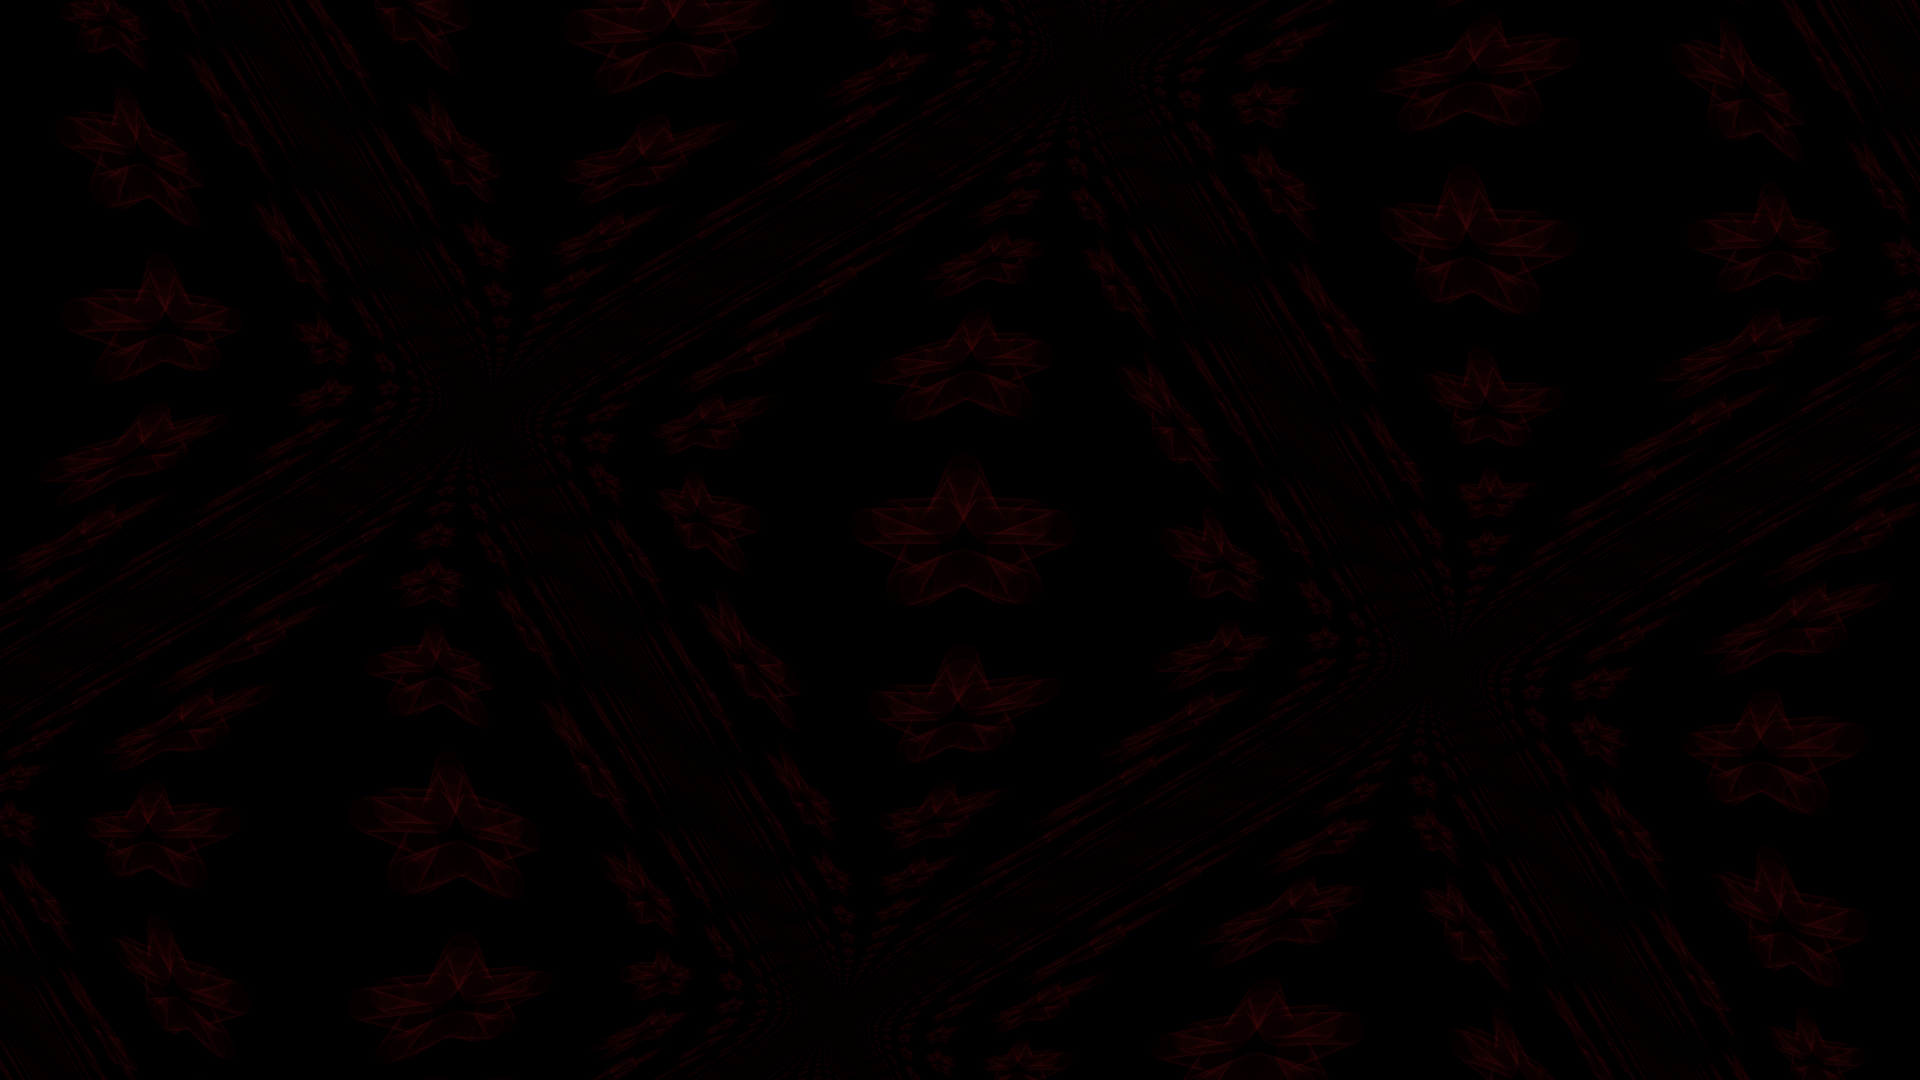 Black and Red Wallpaper 1920x1080 - WallpaperSafari